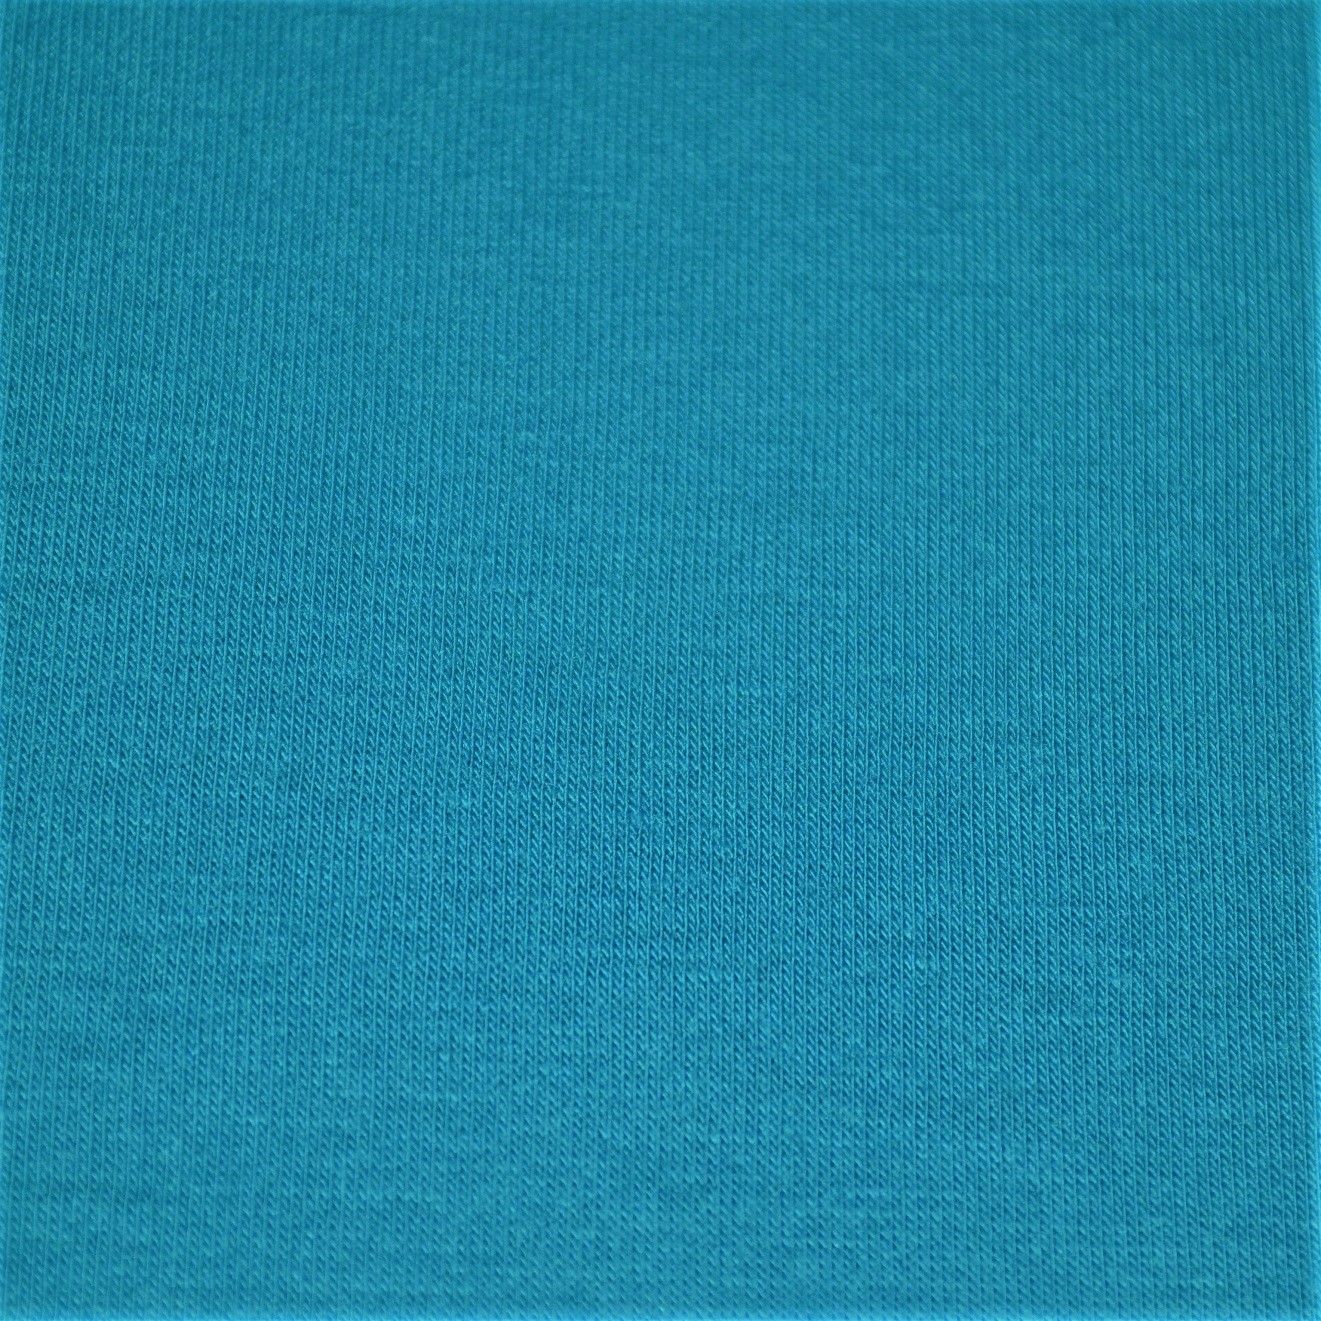 Výřez úplet modrý 2ks 90x36cm